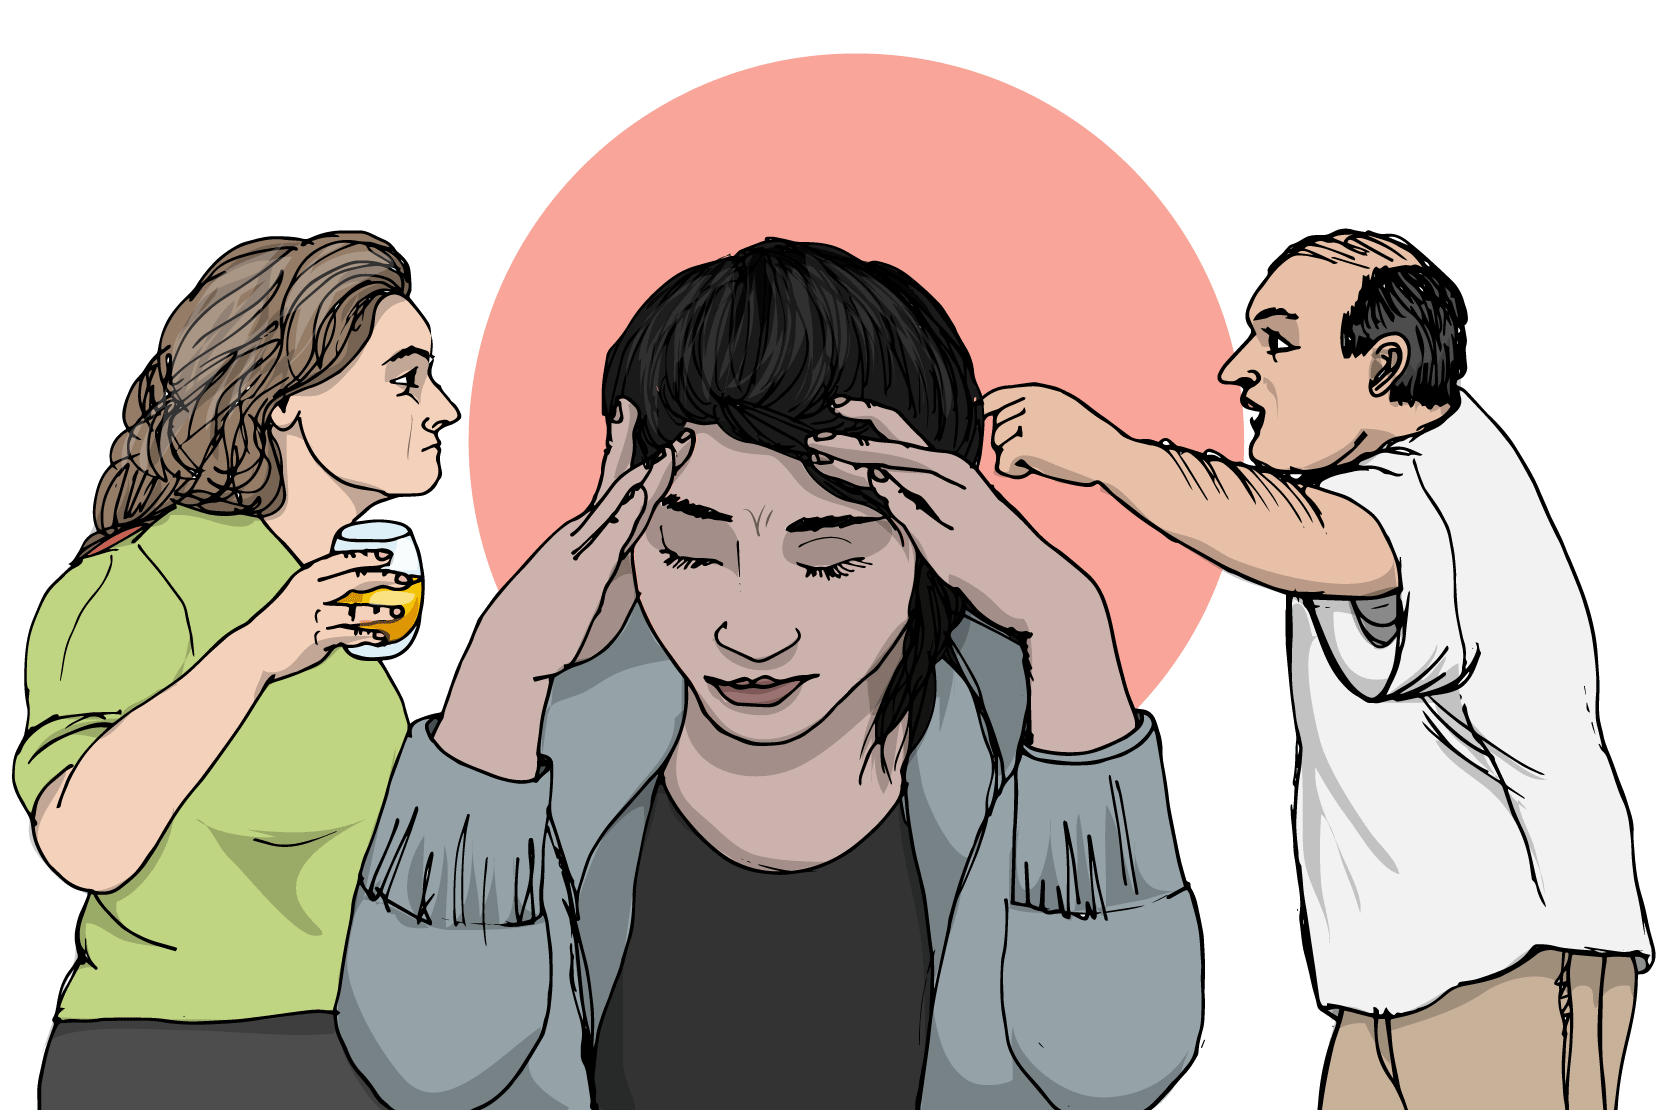 Två vuxna står och grälar över huvudet på en ung person som ser ut att må dåligt. Illustraion